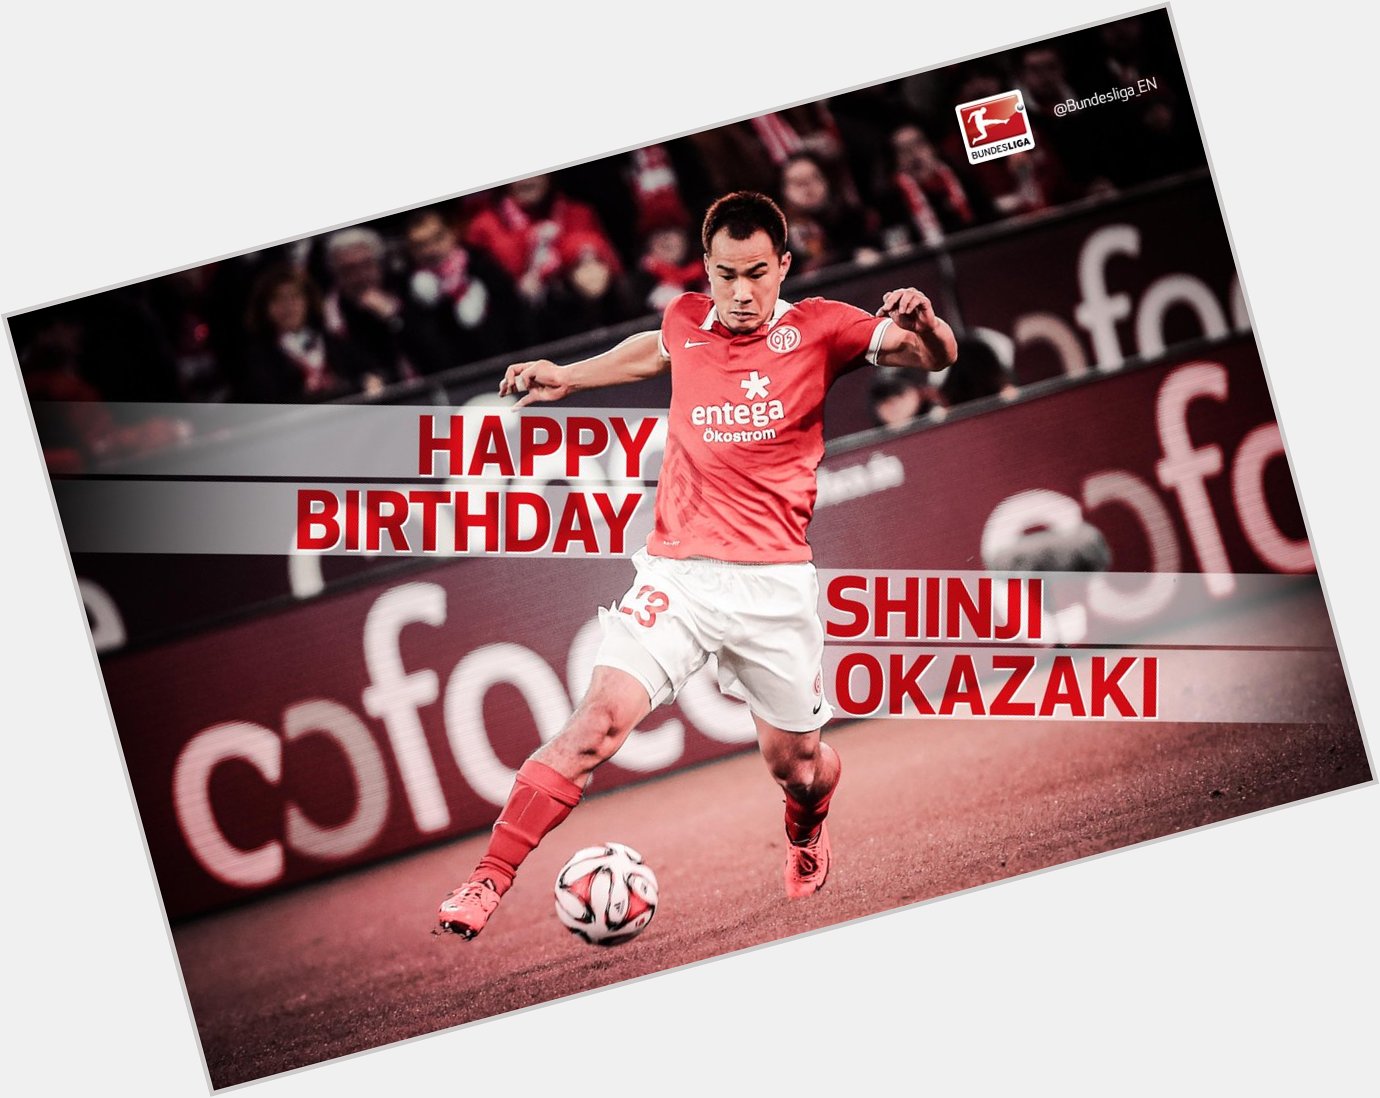 Happy 29th birthday to and Japan\s Shinji Okazaki 

Enjoy your day! 